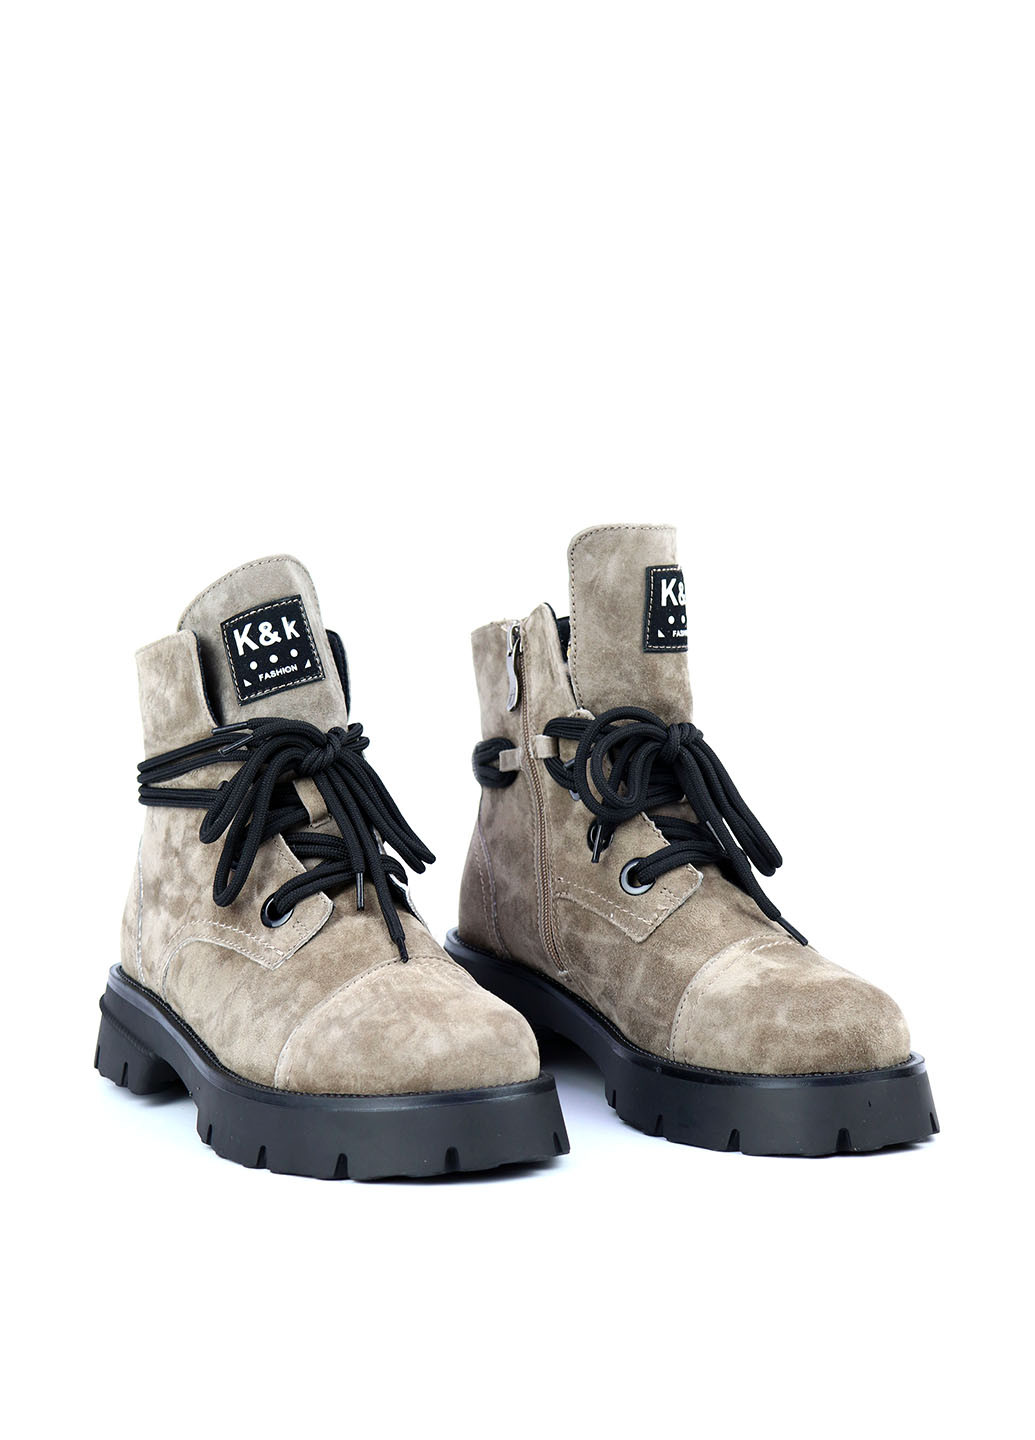 Зимние ботинки Respect со шнуровкой, на тракторной подошве из натуральной замши